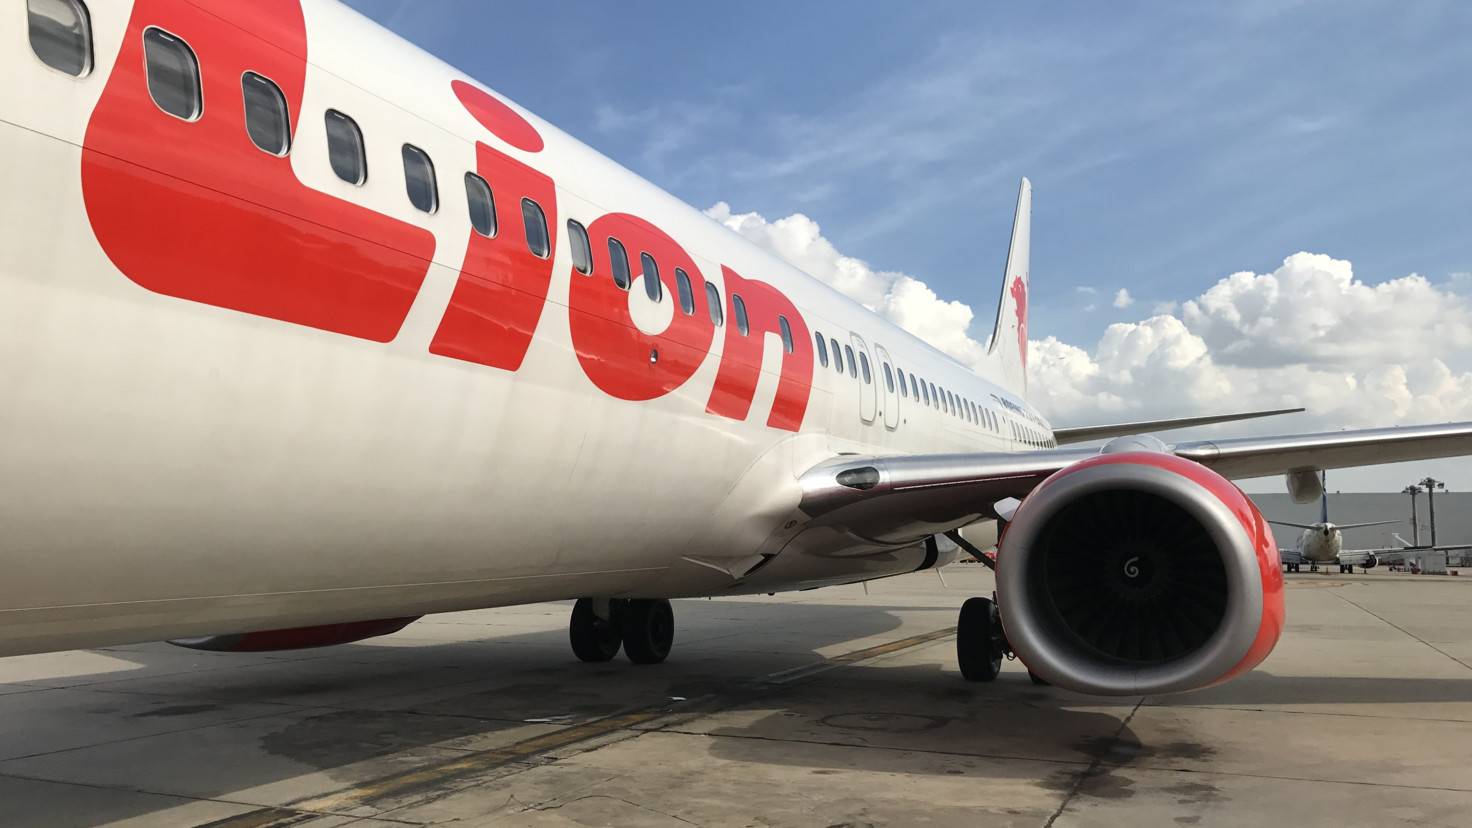 Лайон эйрлайнз - отзывы пассажиров 2017-2018 про авиакомпанию lion airlines